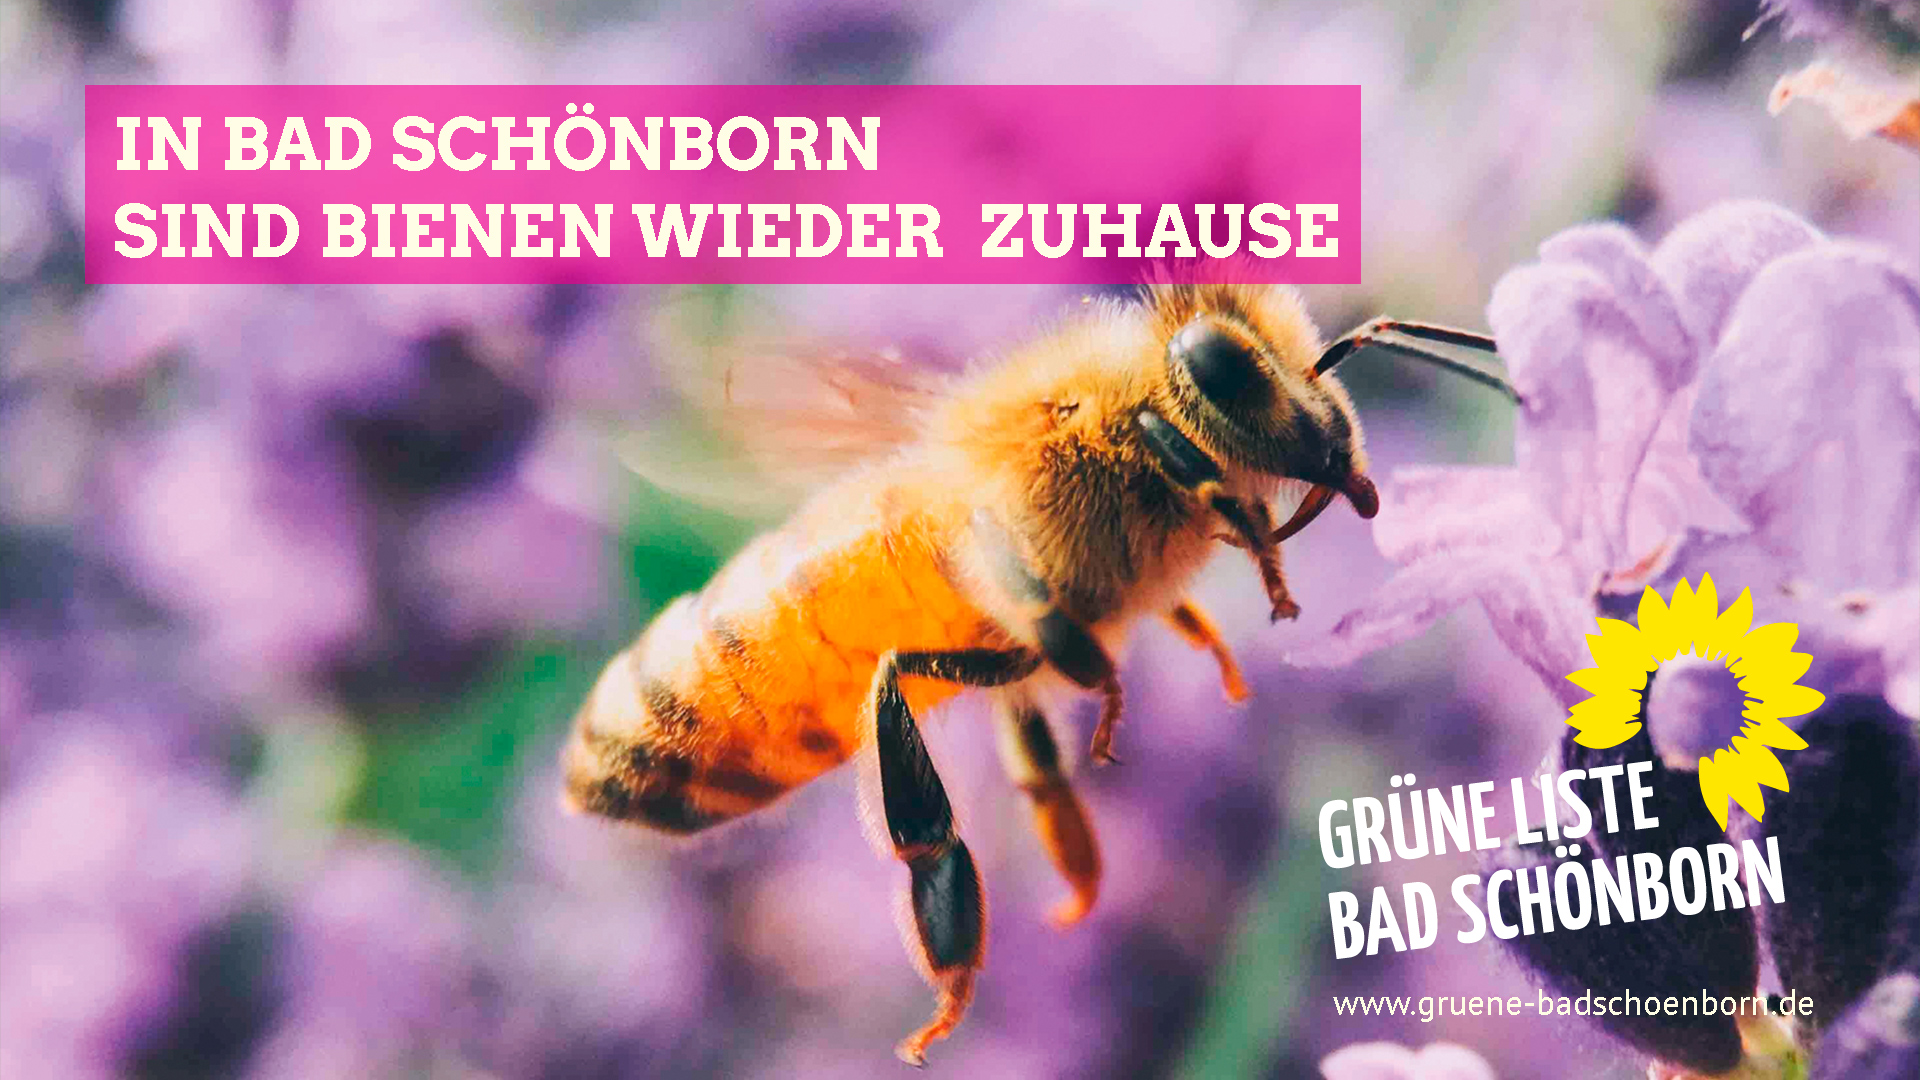 In Bad Schönborn sind Bienen wieder zuhause